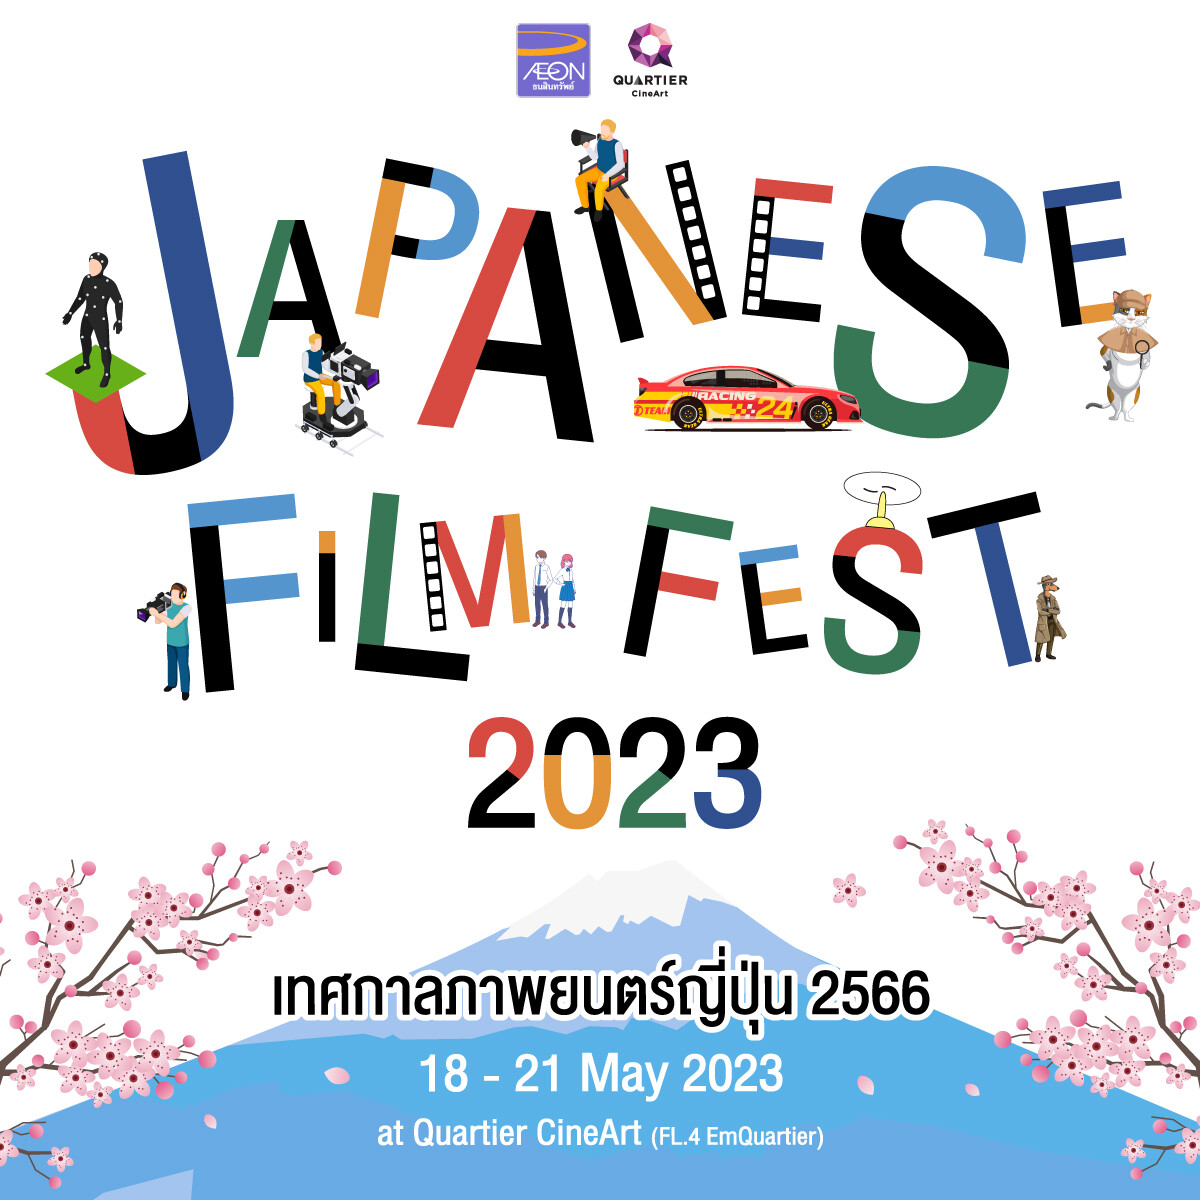 เมเจอร์ ซีนีเพล็กซ์ กรุ้ป ร่วมกับ อิออน จัดเทศกาลภาพยนตร์ญี่ปุ่น "Japanese Film Fest 2023" คัดสรรหนังคุณภาพ 8 เรื่องครบรสให้ชมฟรี 18-21 พฤษภาคมนี้ ที่ ควอเทียร์ ซีเนอาร์ต